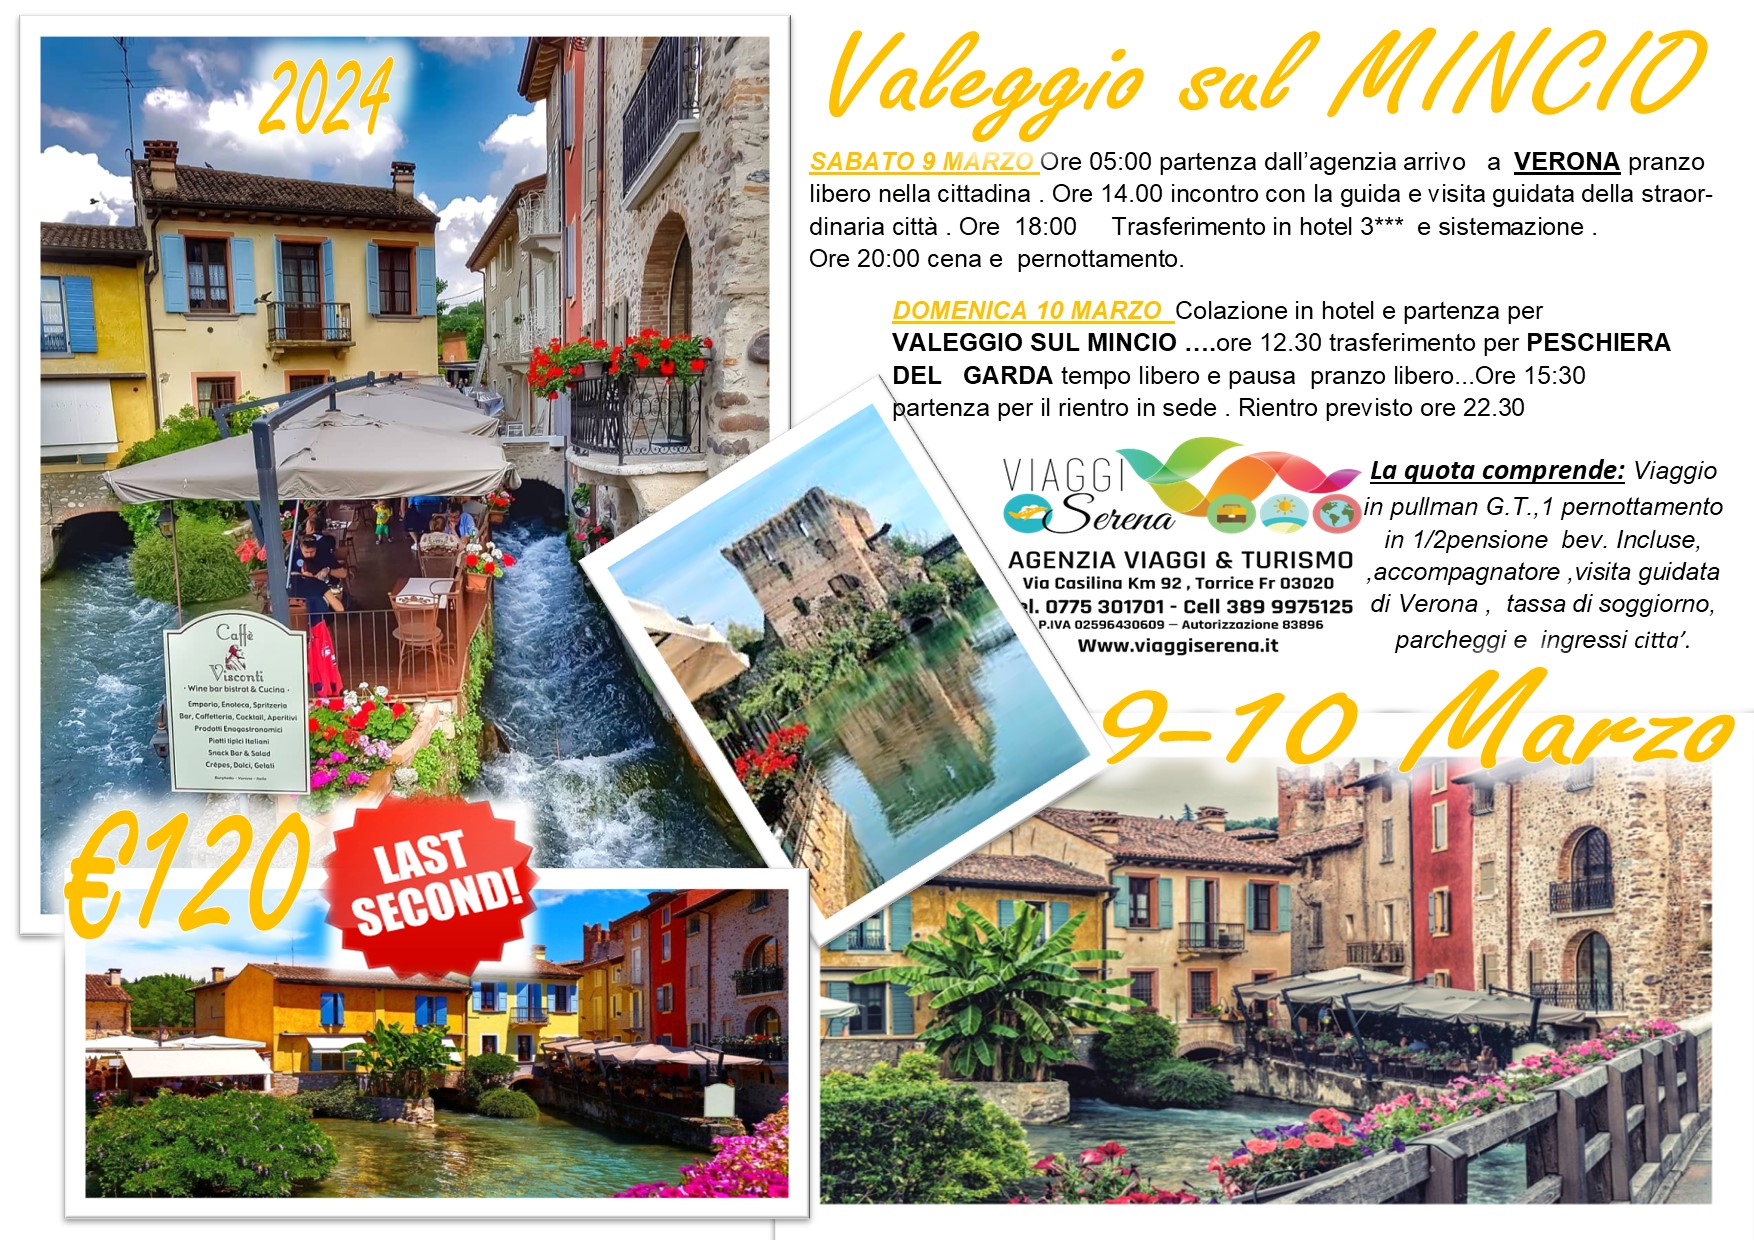 Viaggi di gruppo: Valeggio sul Mincio, Verona & Peschiera del Garda 9-10 Marzo € 120,00